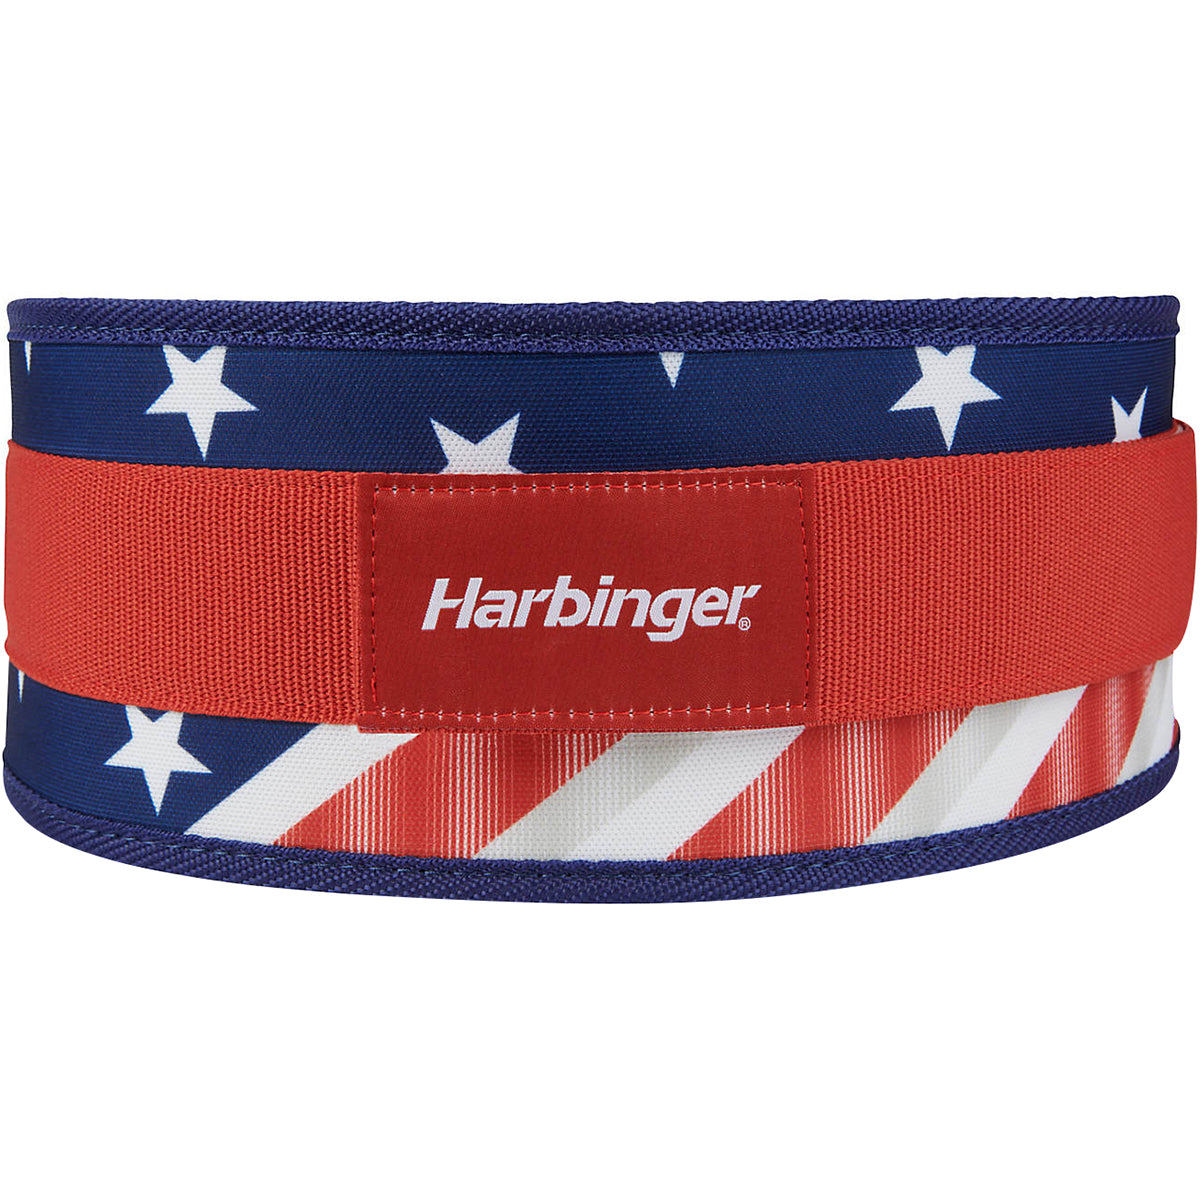 Harbinger 4.5" Unisex Foam Core Weight Lifting Belt - Flag Harbinger